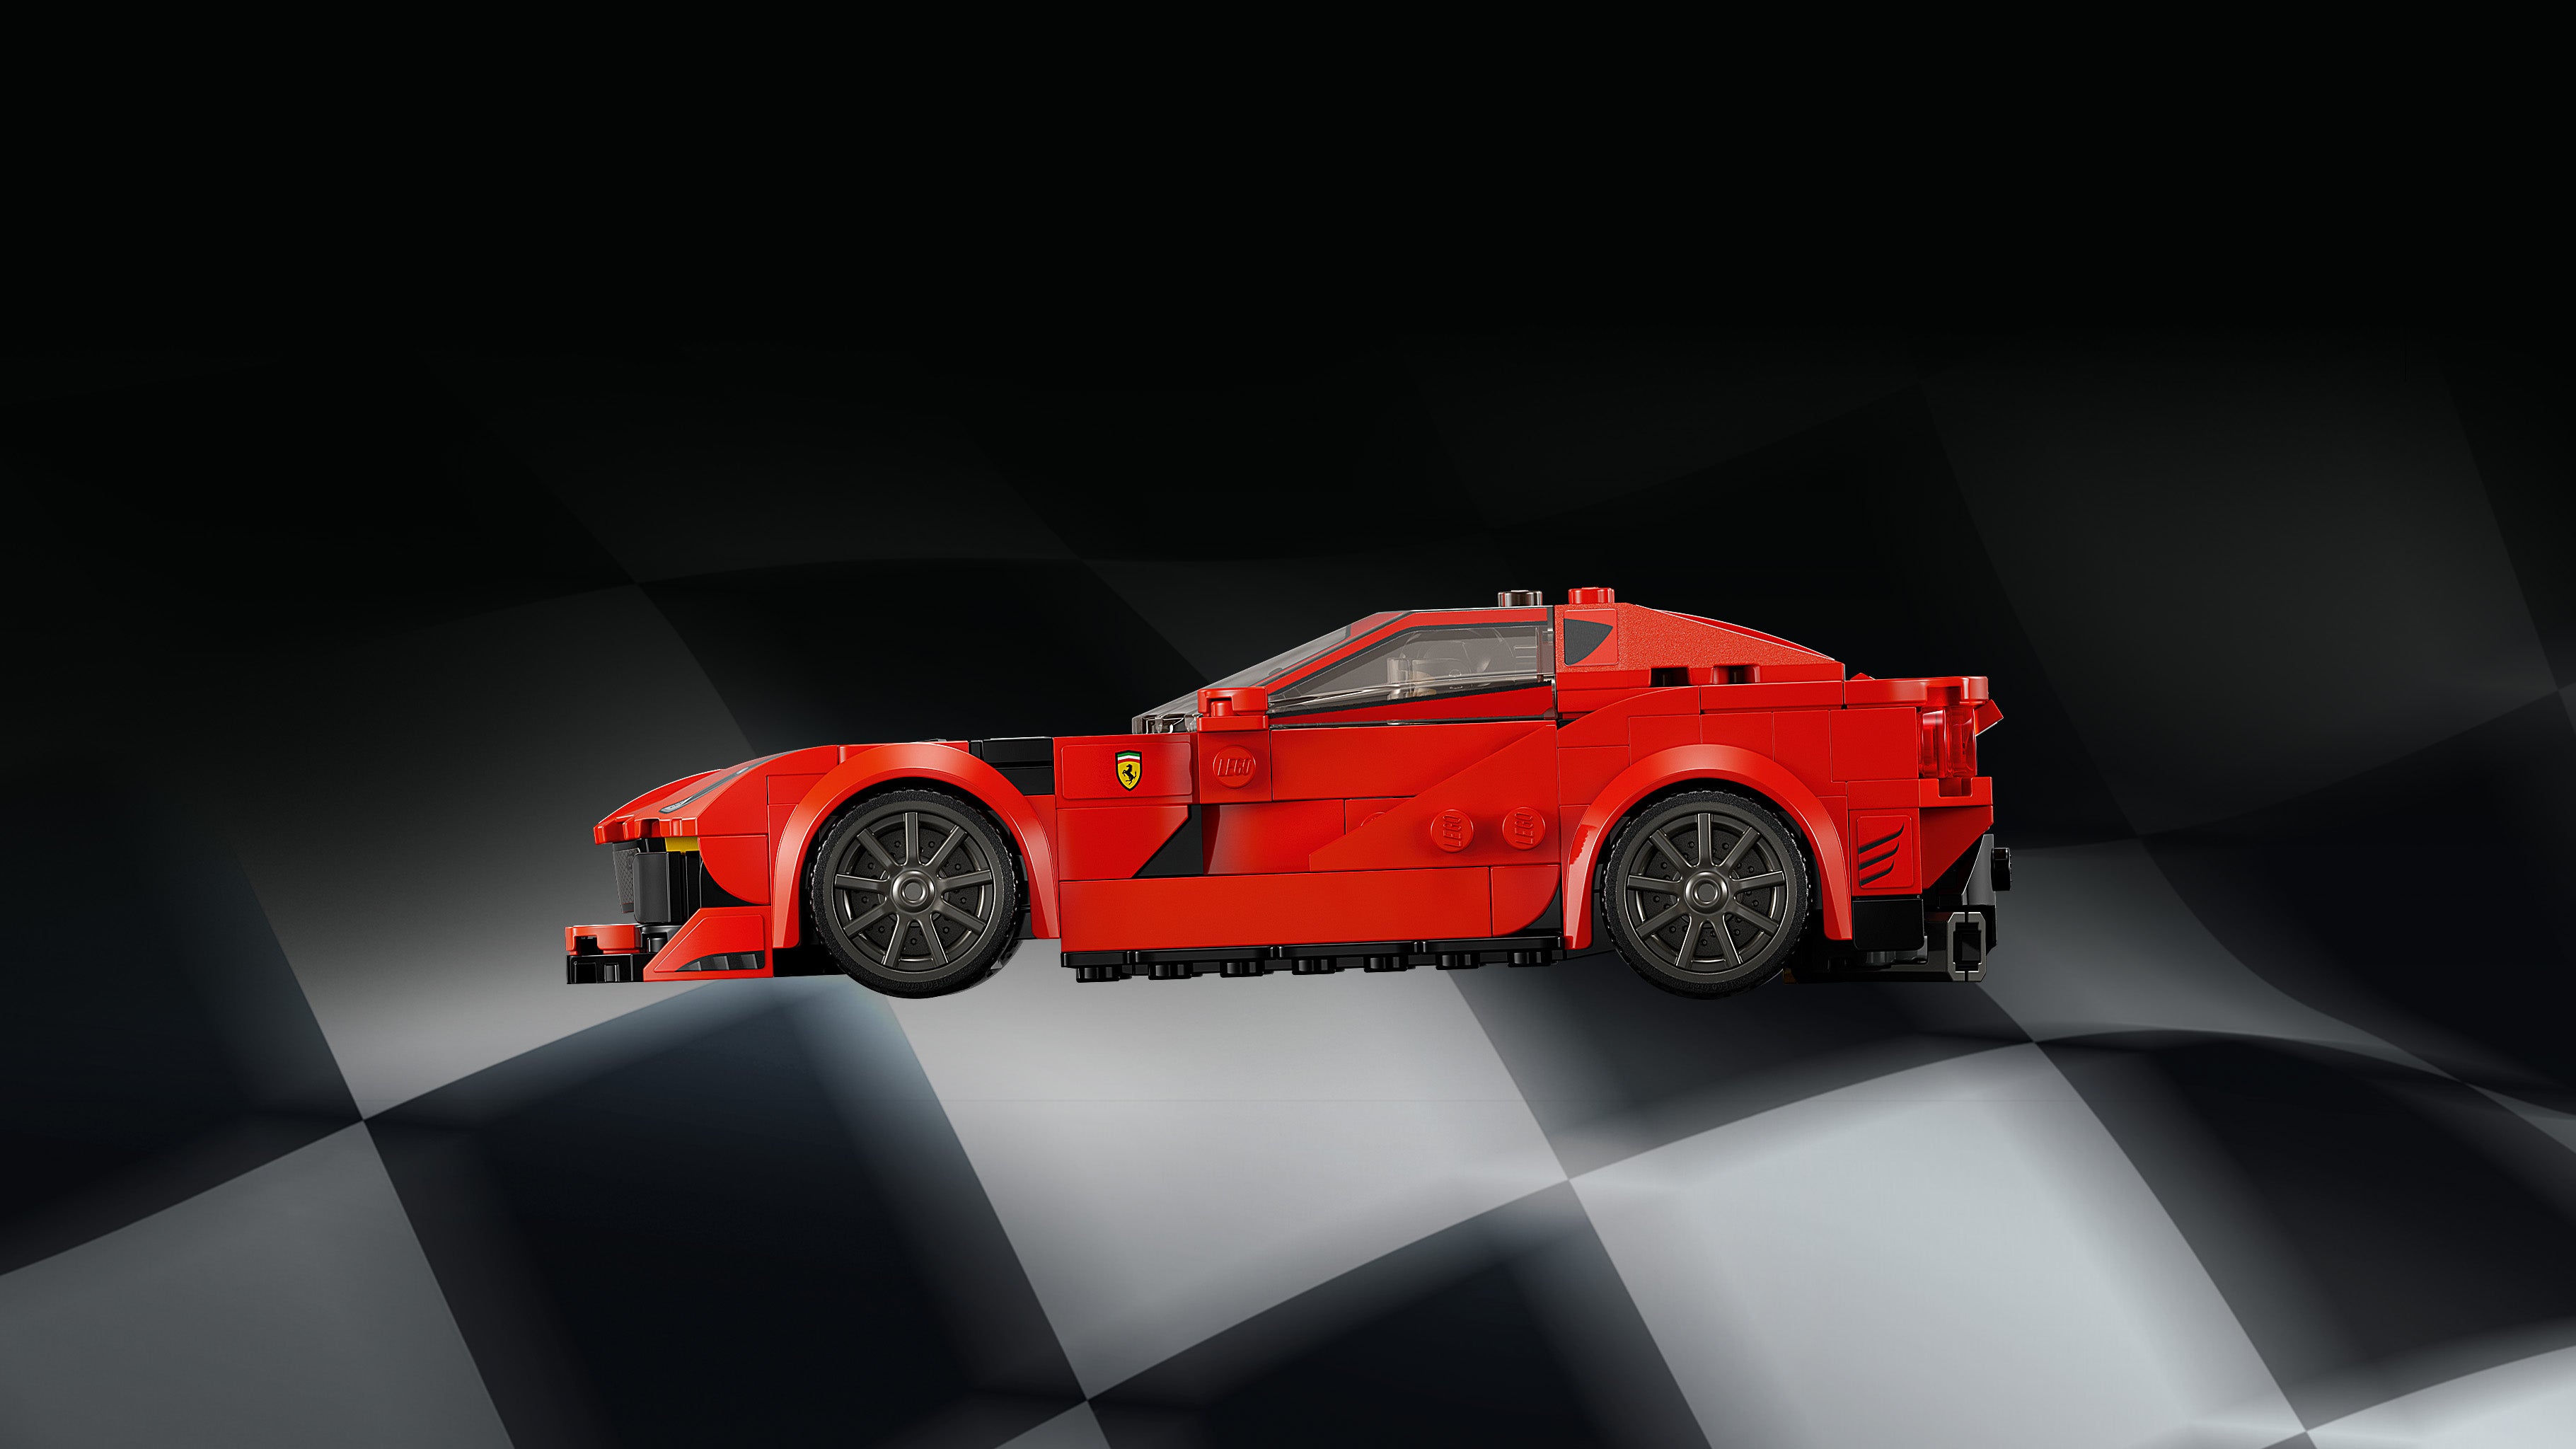 Lego 76914 Ferrari 812 Competizione